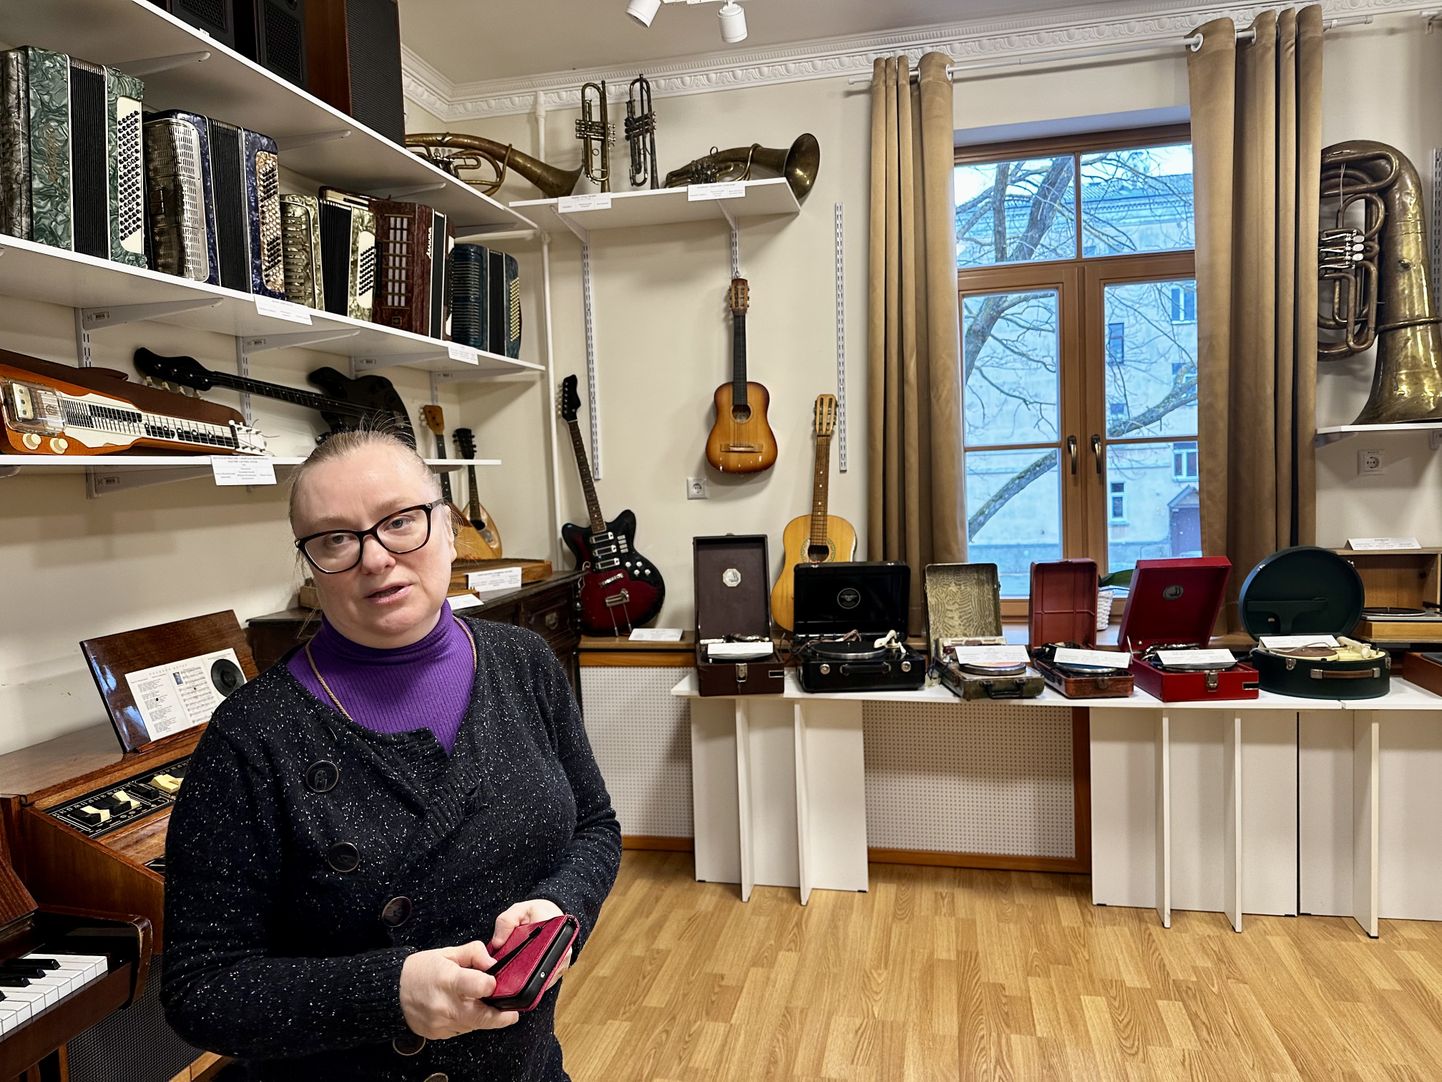 Елена Антушева в зале музыки, Силламяэский музей.